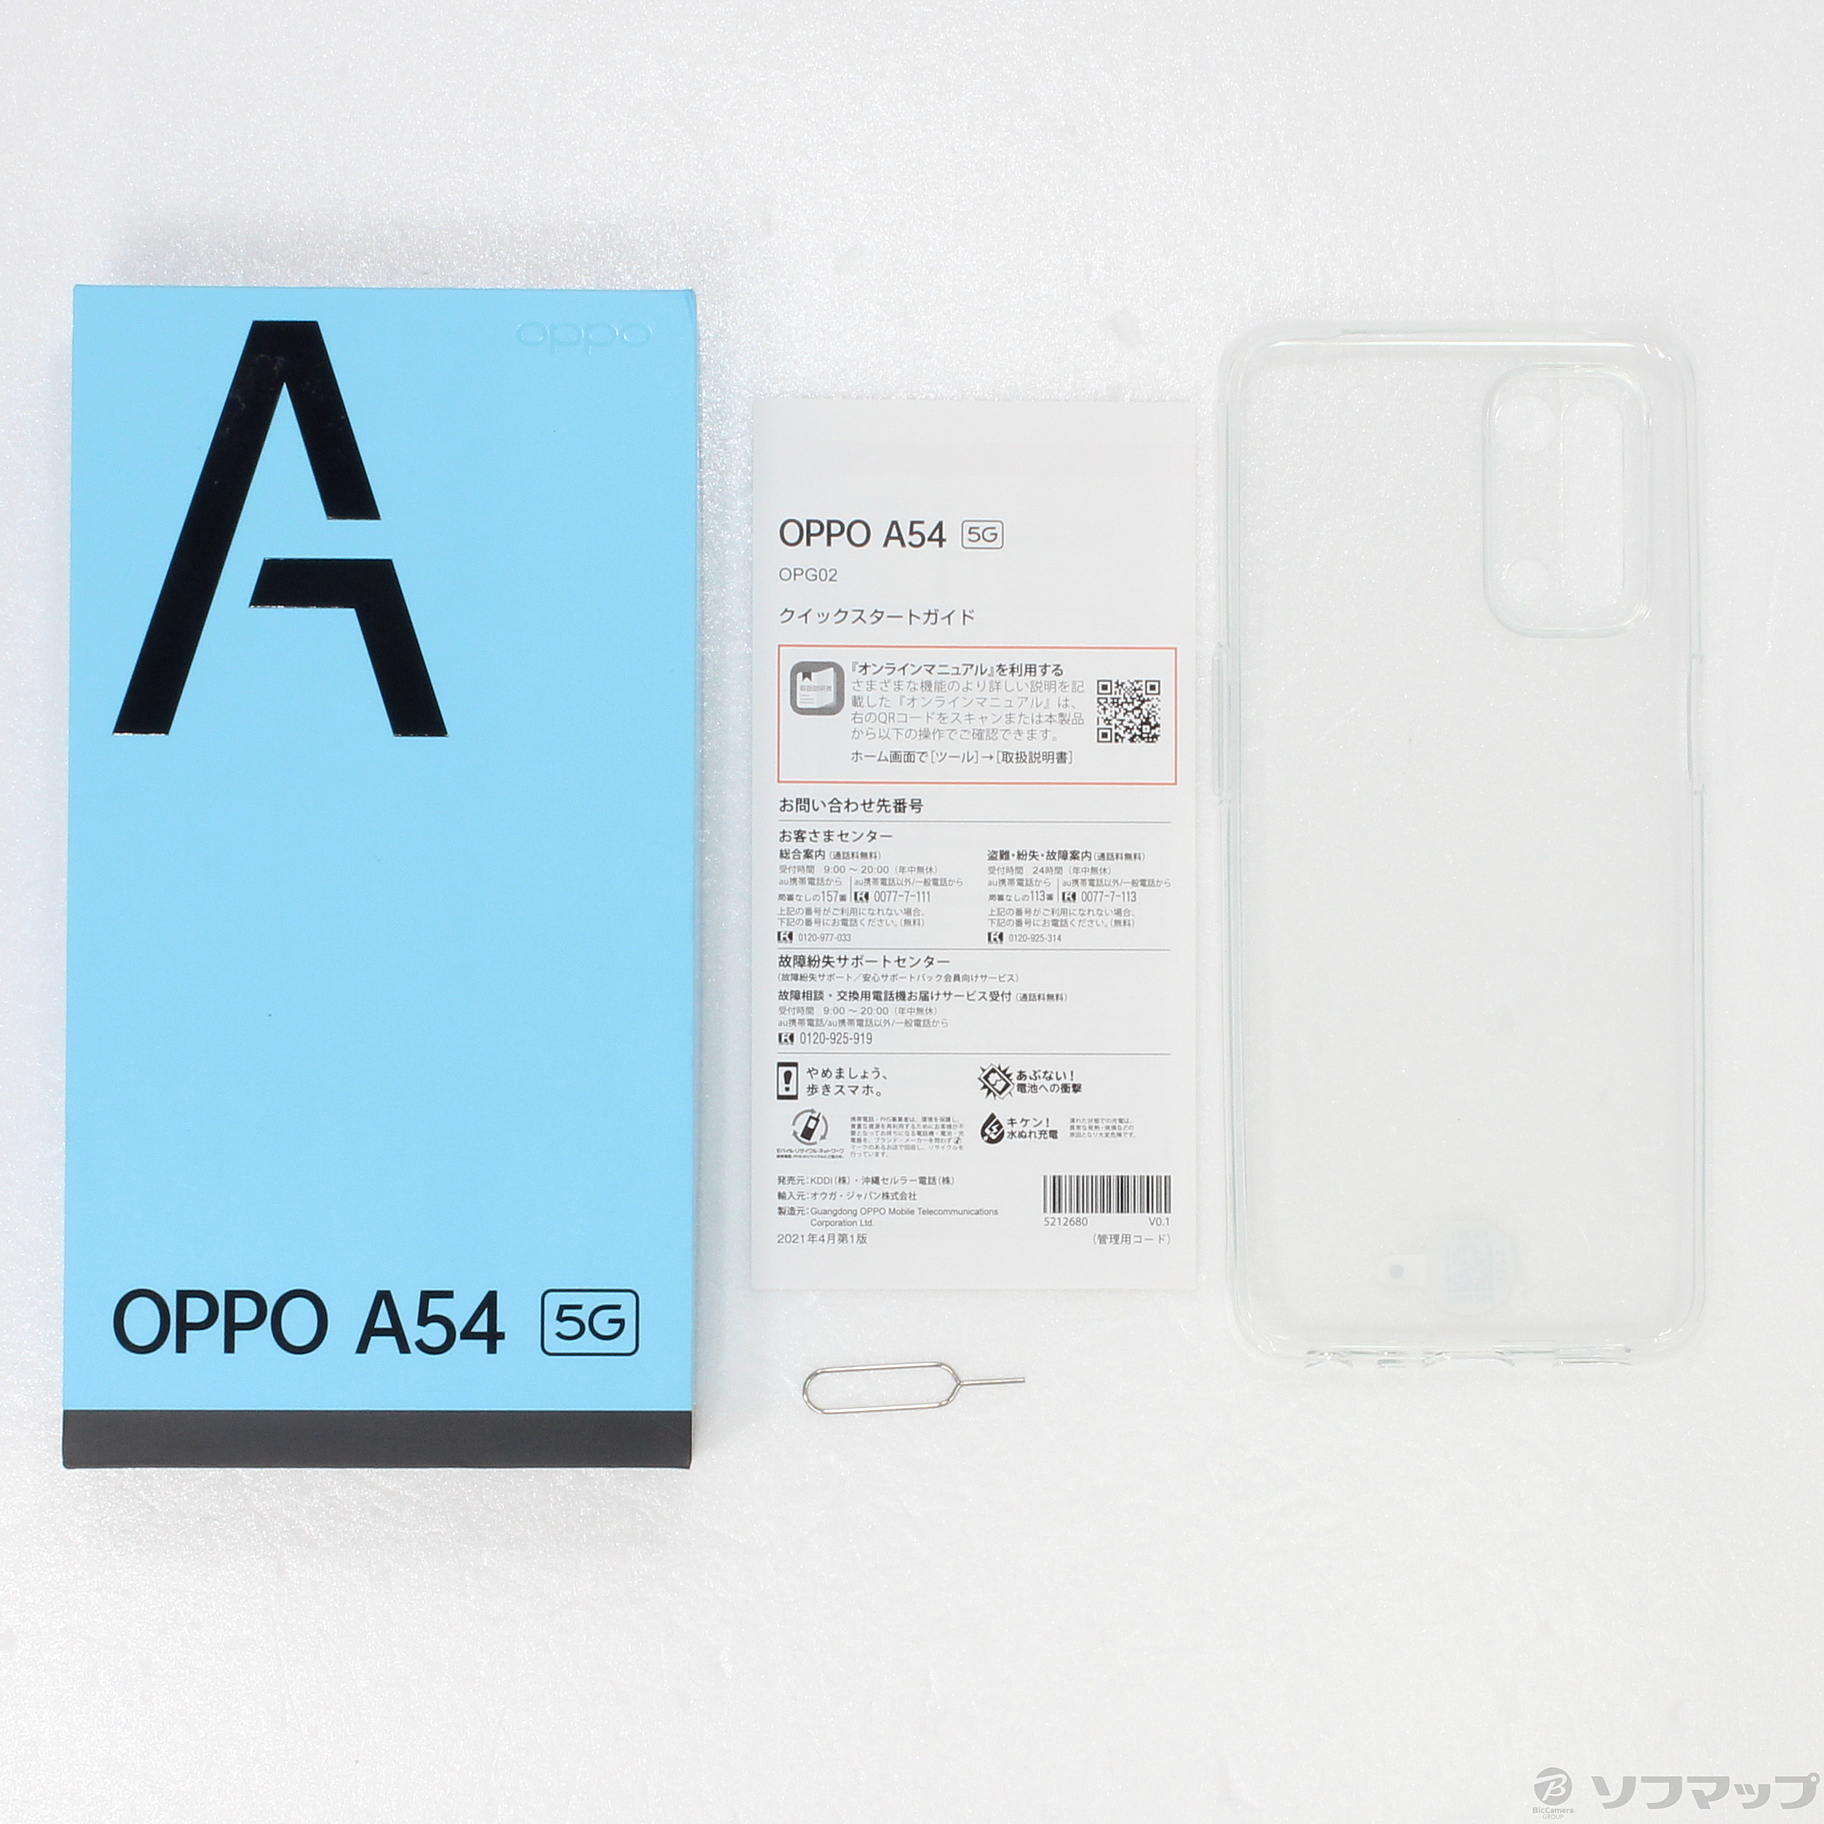 中古】OPPO A54 5G 64GB シルバーブラック OPG02 auロック解除